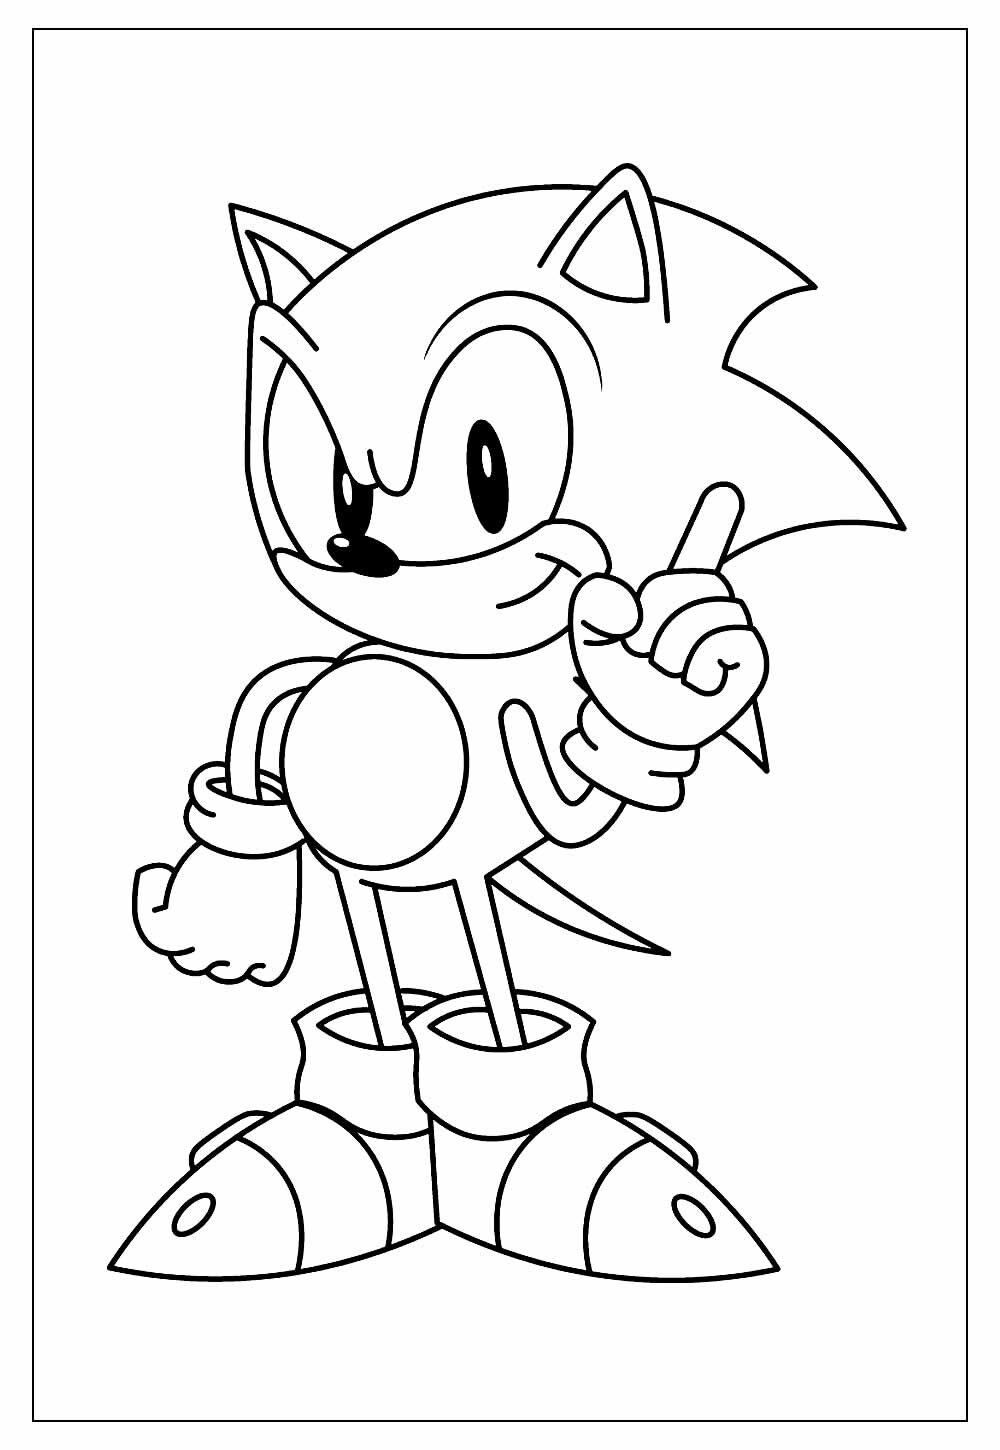 Desenhos para colorir de sonic para baixar - Sonic - Just Color Crianças :  Páginas para colorir para crianças